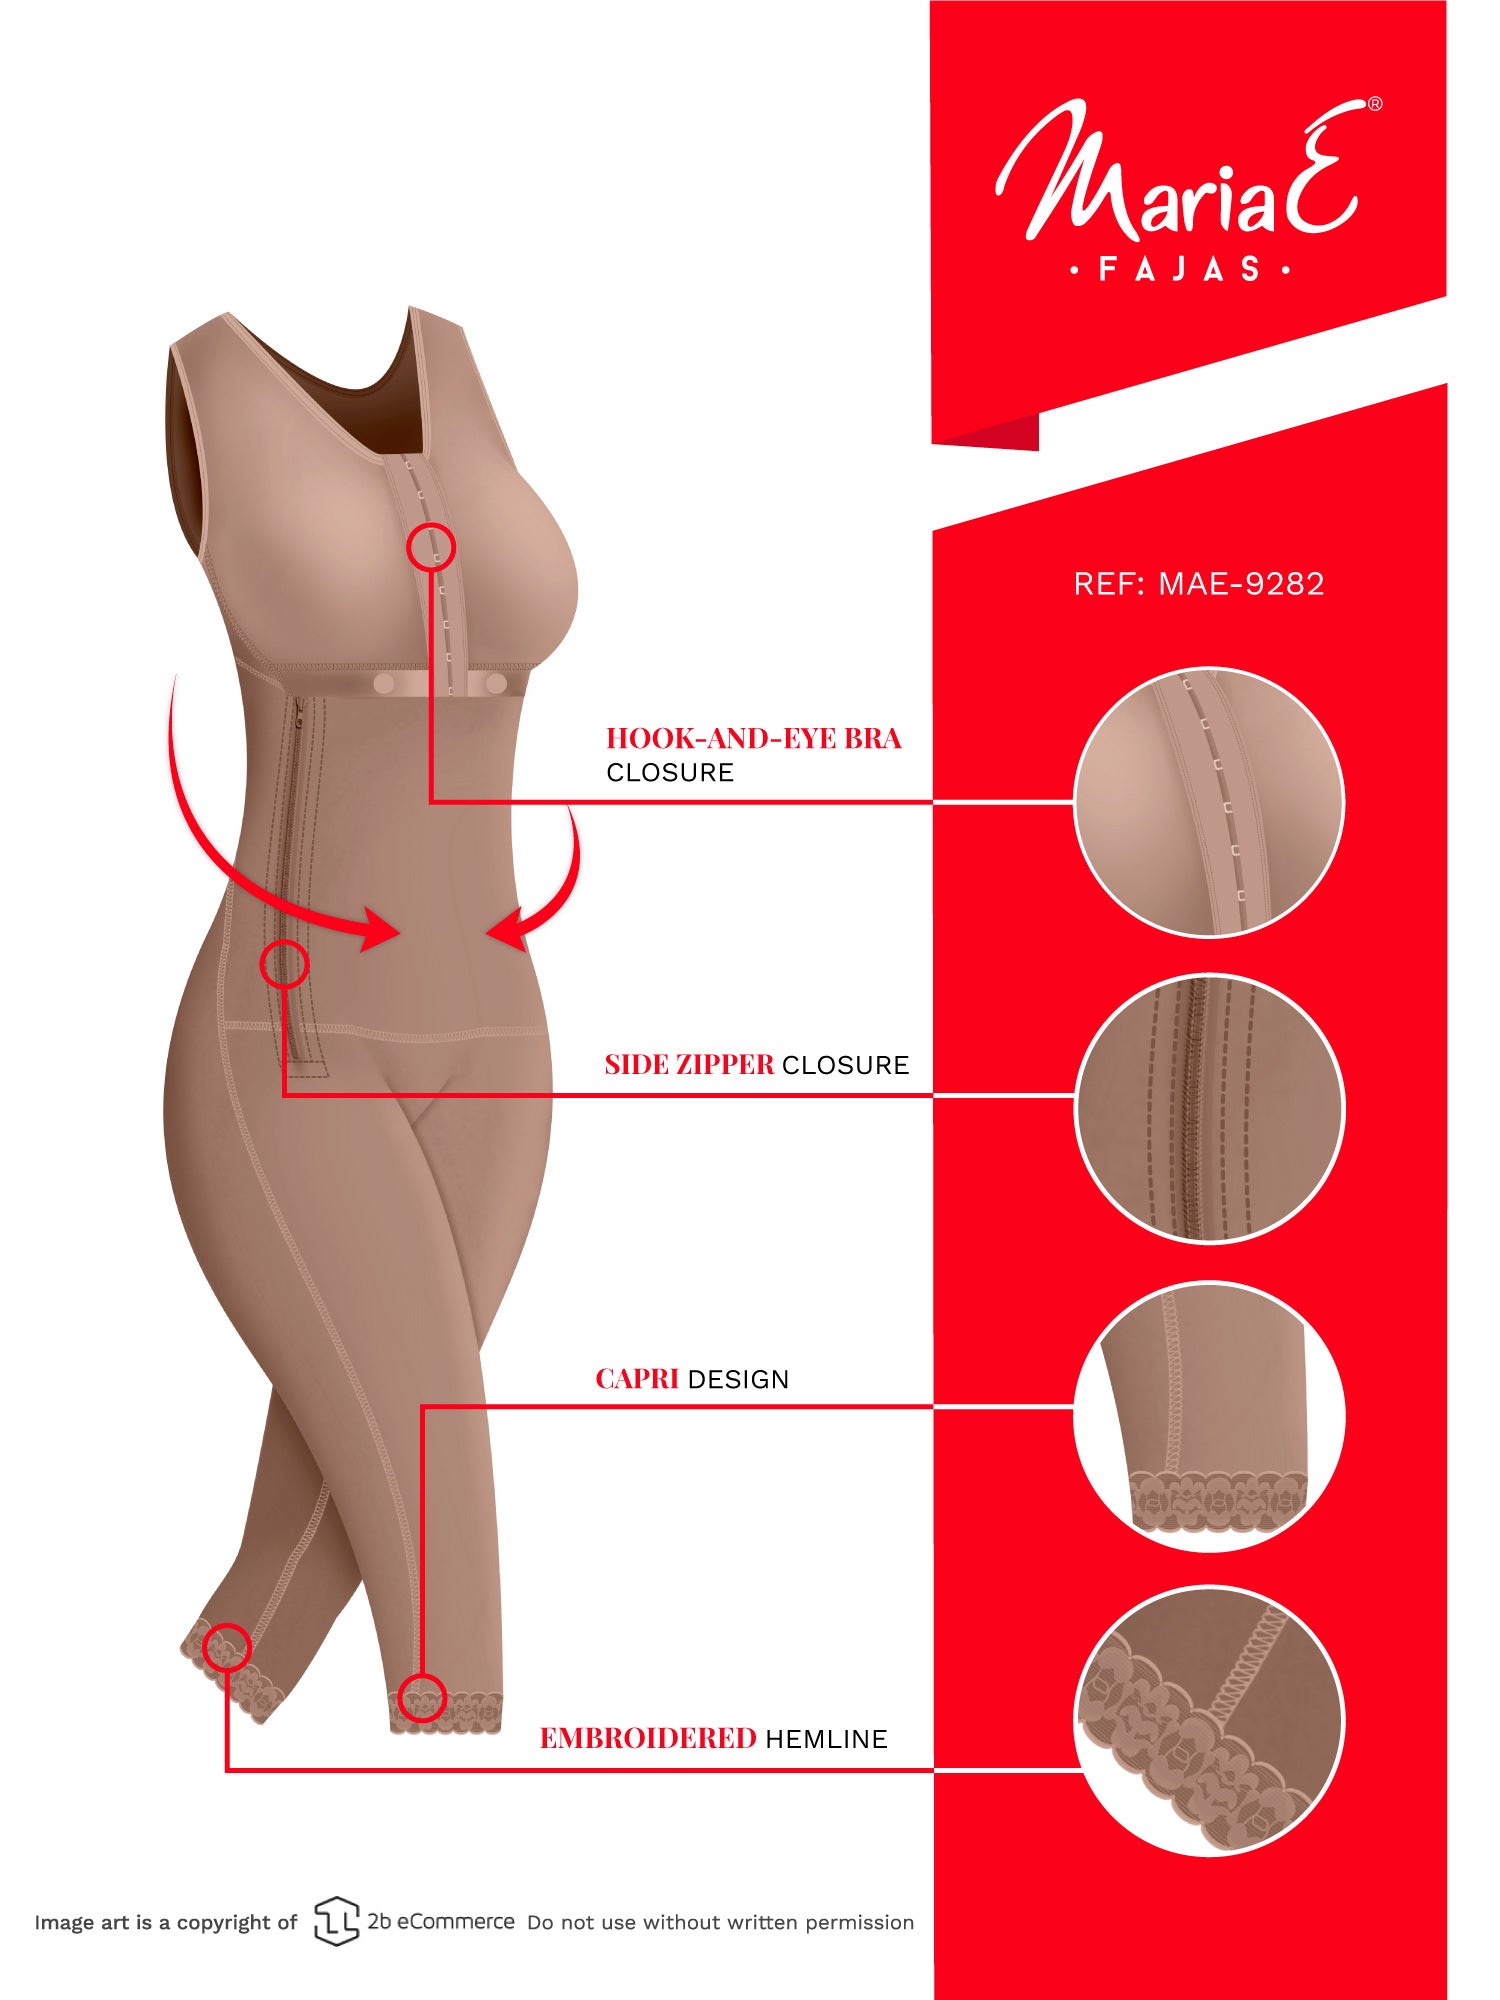 Fajas MariaE 9282 | Postpartum Shapewear | Tummy Control Faja